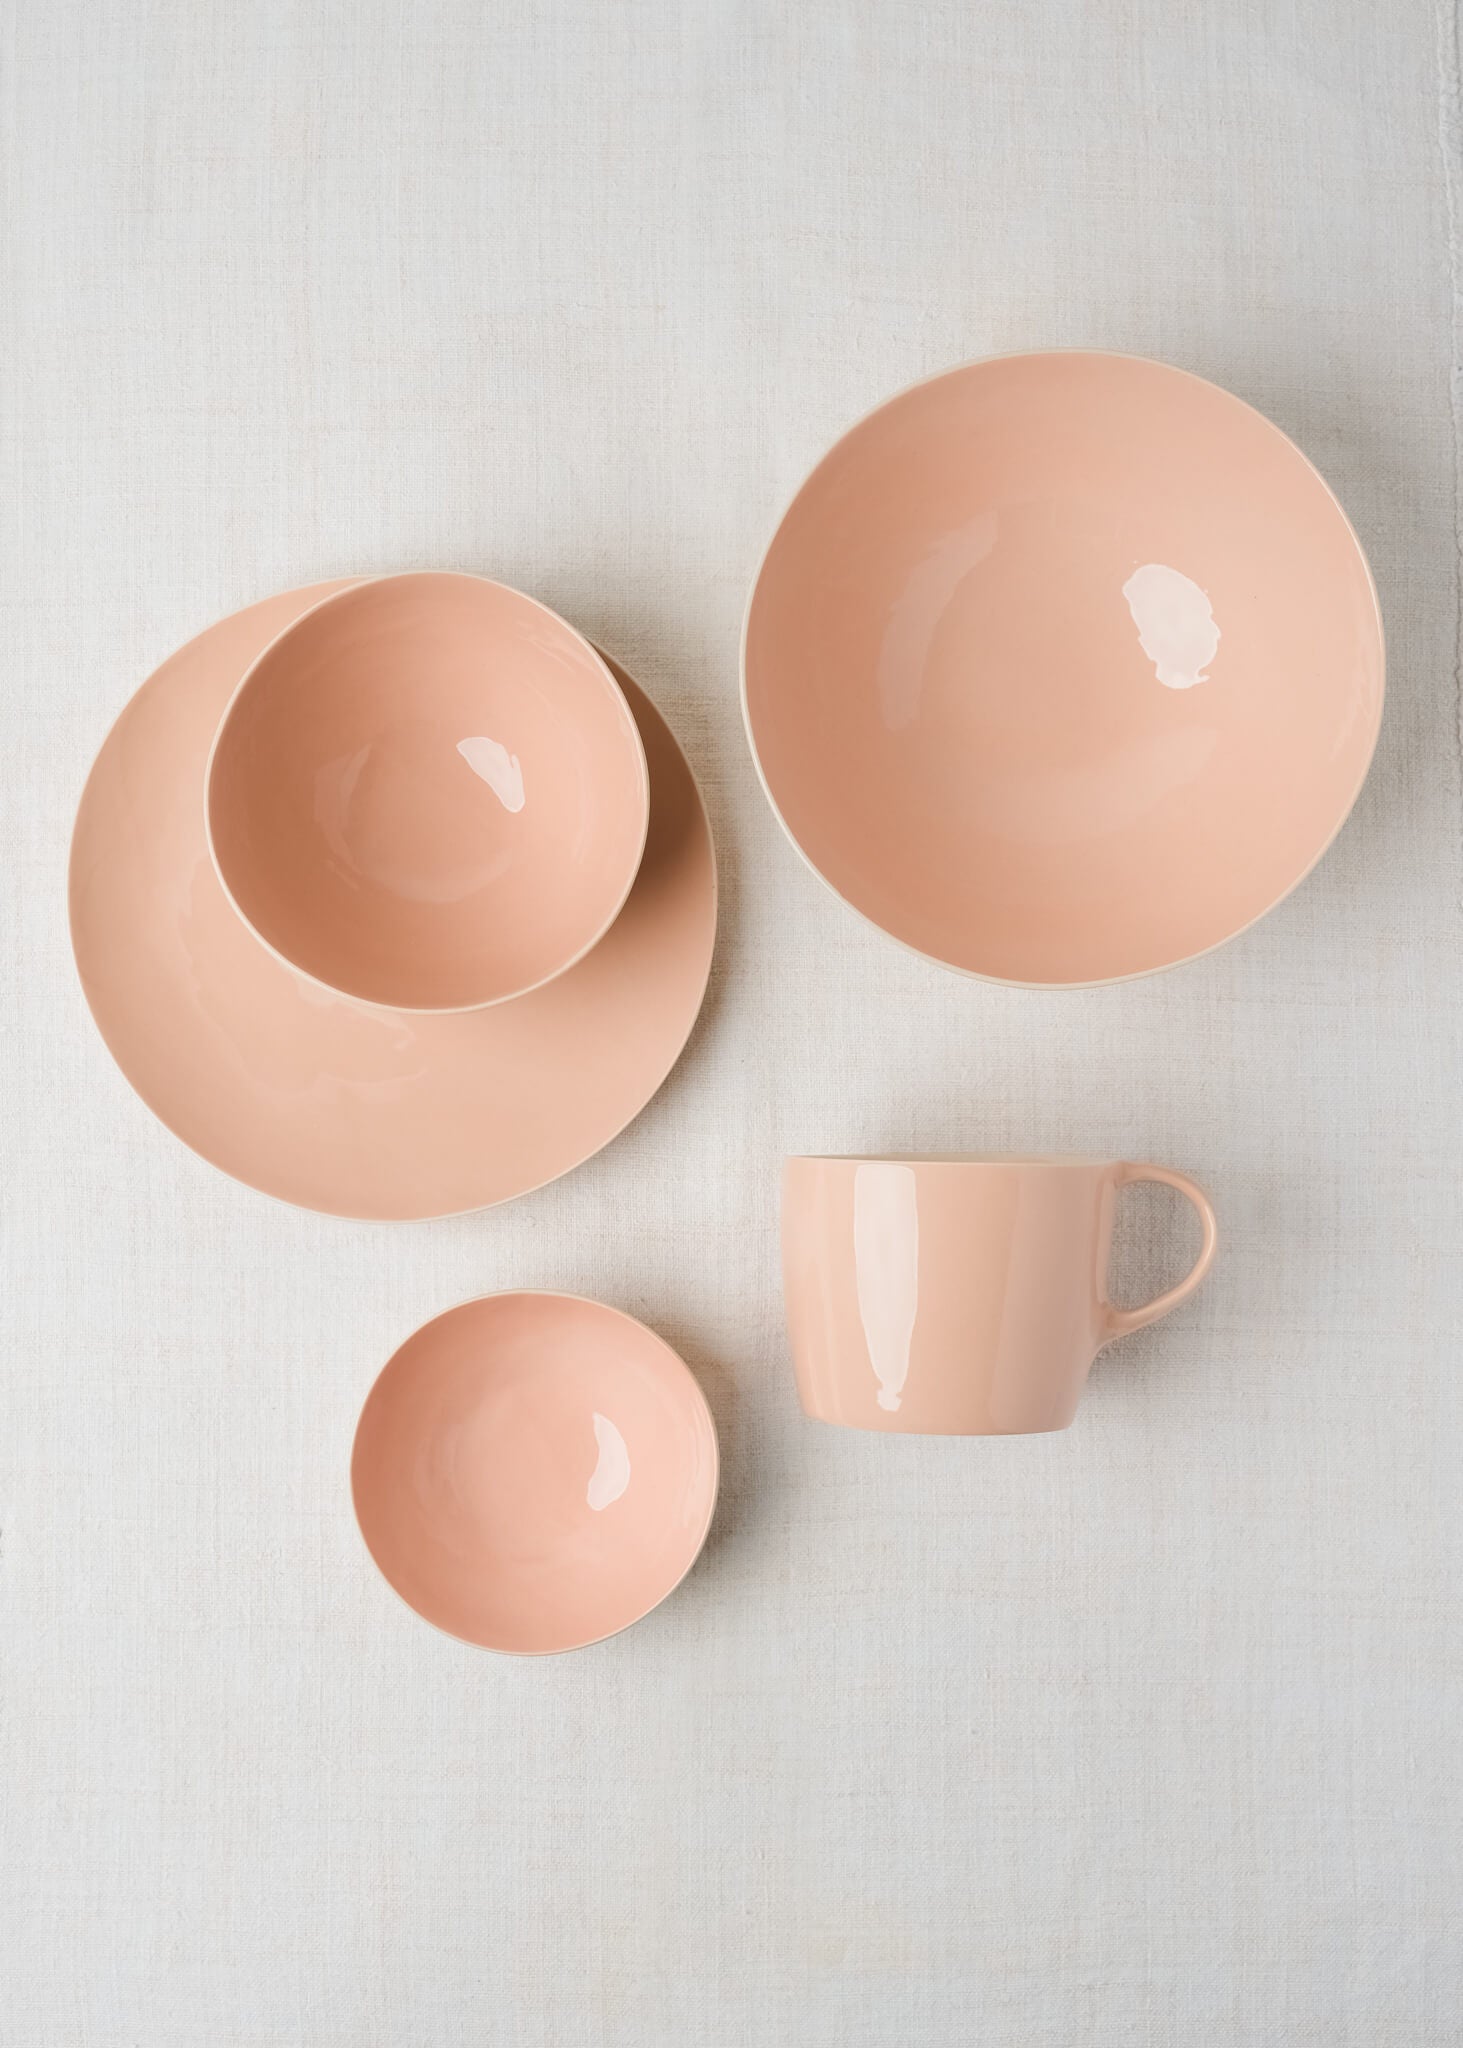 Handmade Mug – Blossom